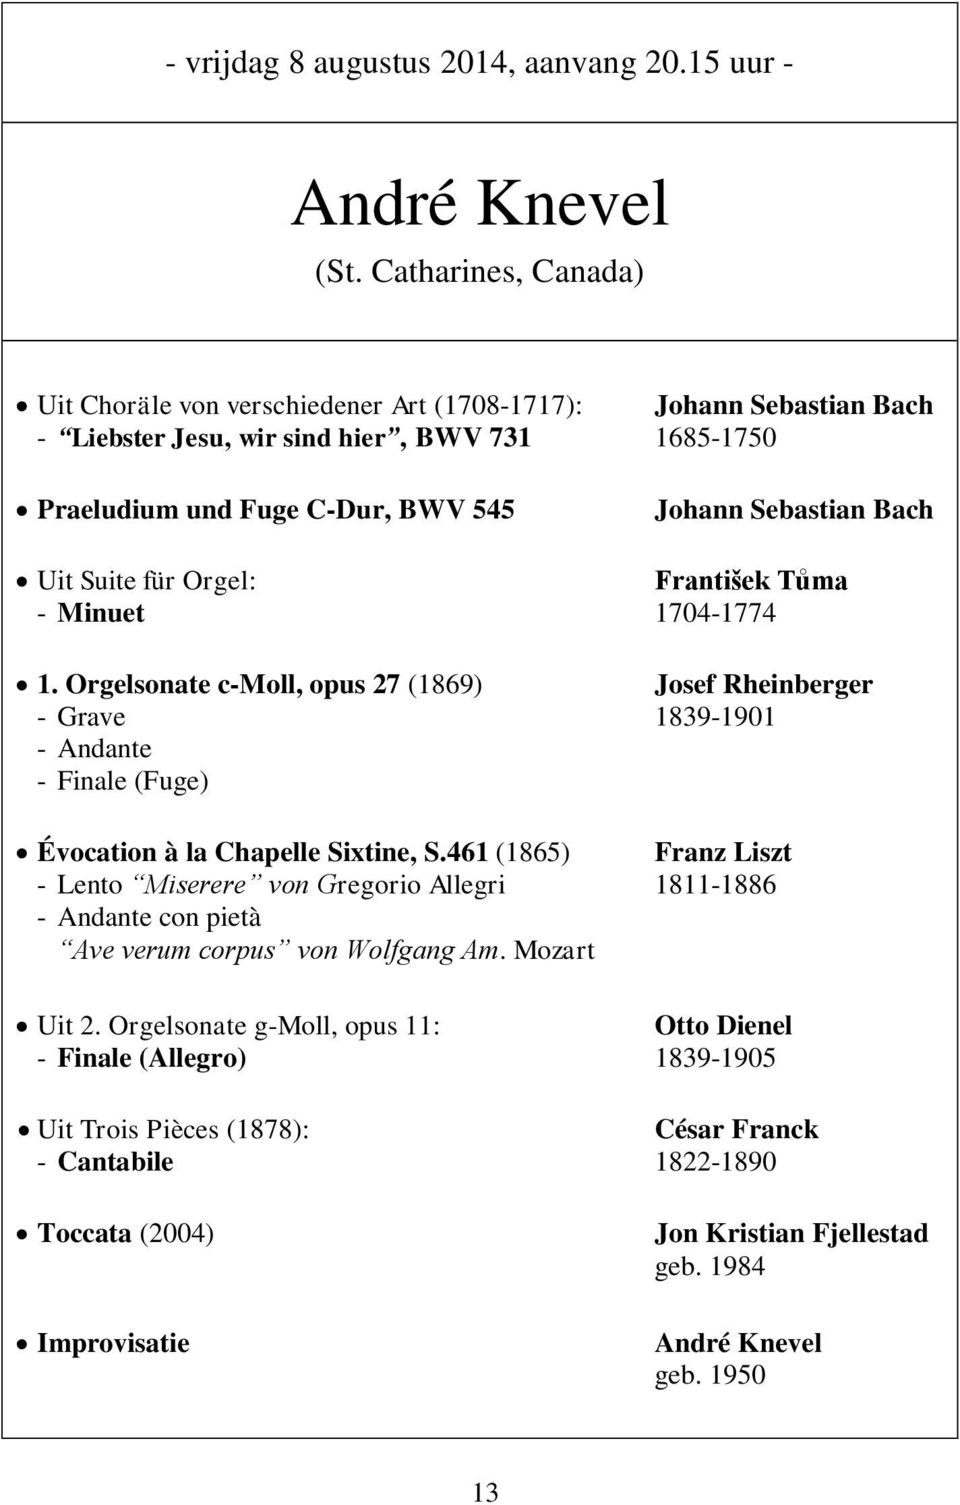 Suite für Orgel: František Tůma - Minuet 1704-1774 1. Orgelsonate c-moll, opus 27 (1869) Josef Rheinberger - Grave 1839-1901 - Andante - Finale (Fuge) Évocation à la Chapelle Sixtine, S.